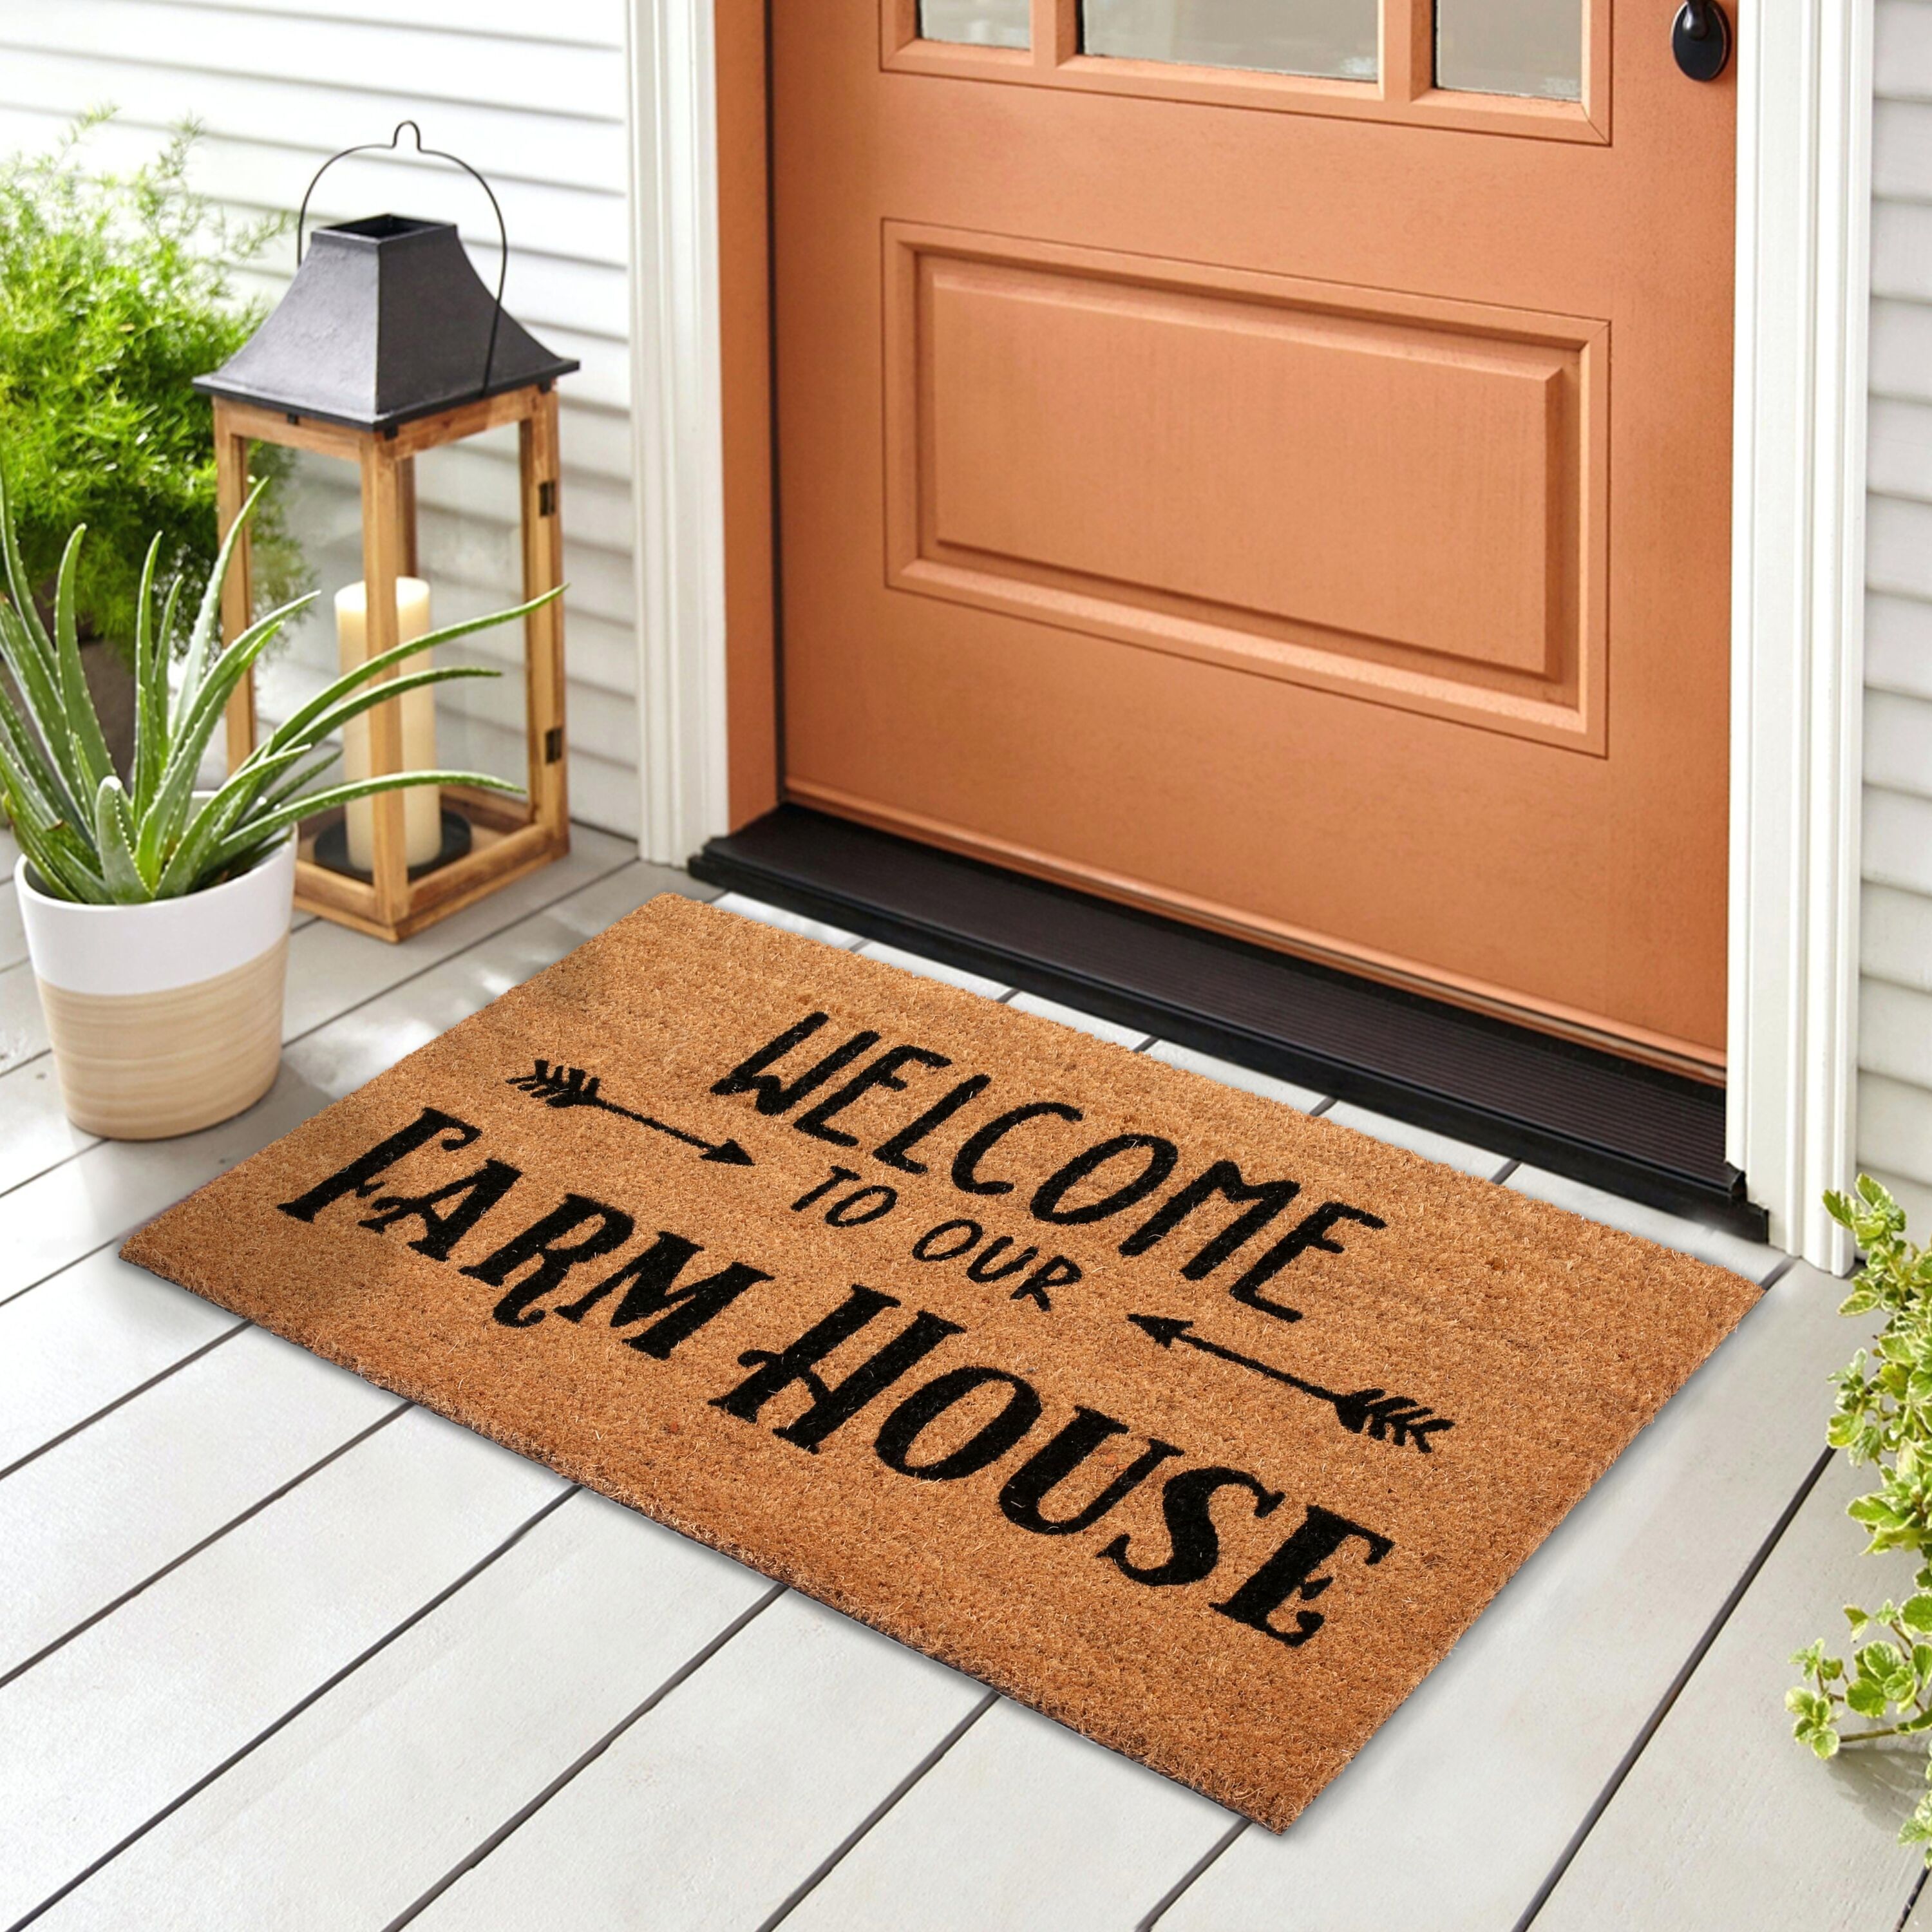  Pink Hello Gorgeous Door Mat for Front Door Home Entrance Rugs  Farmhouse Home Kitchen Decoration Floor Front Door Mat, 30 x 17 Inch :  Patio, Lawn & Garden